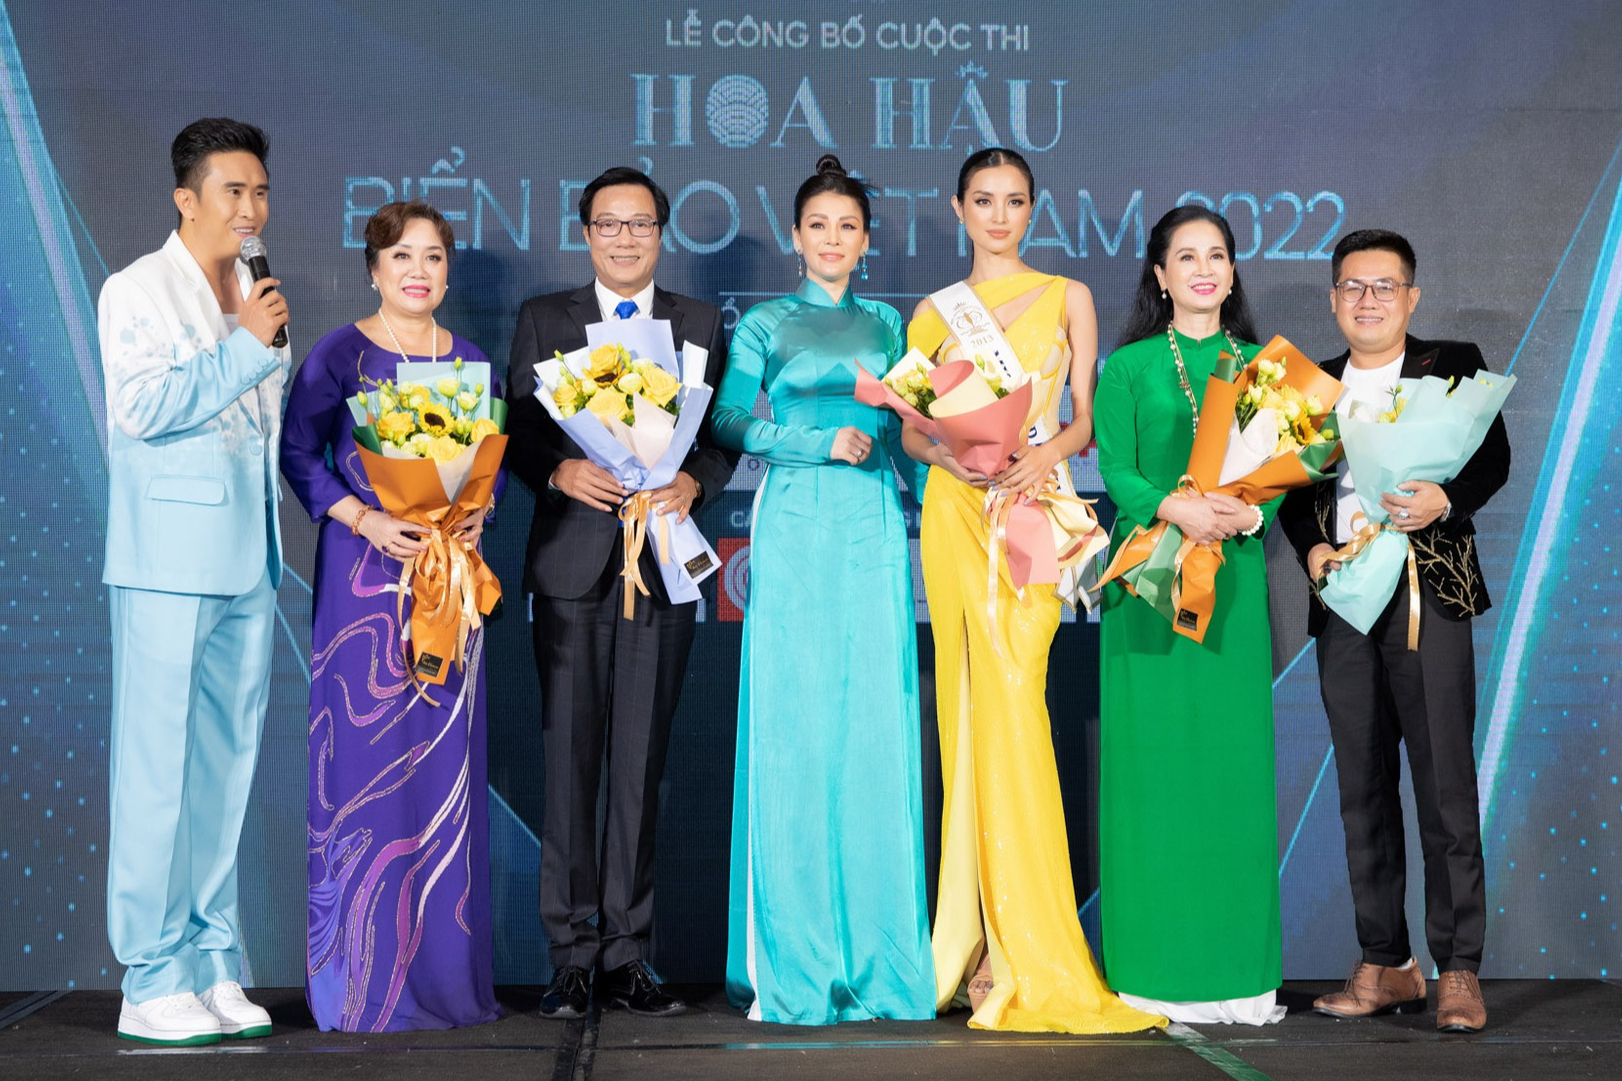 Hoa hậu Siêu quốc gia 2013 nói gì khi ngồi "ghế nóng" chấm thi Hoa hậu Biển Đảo Việt Nam 2022? - Ảnh 2.